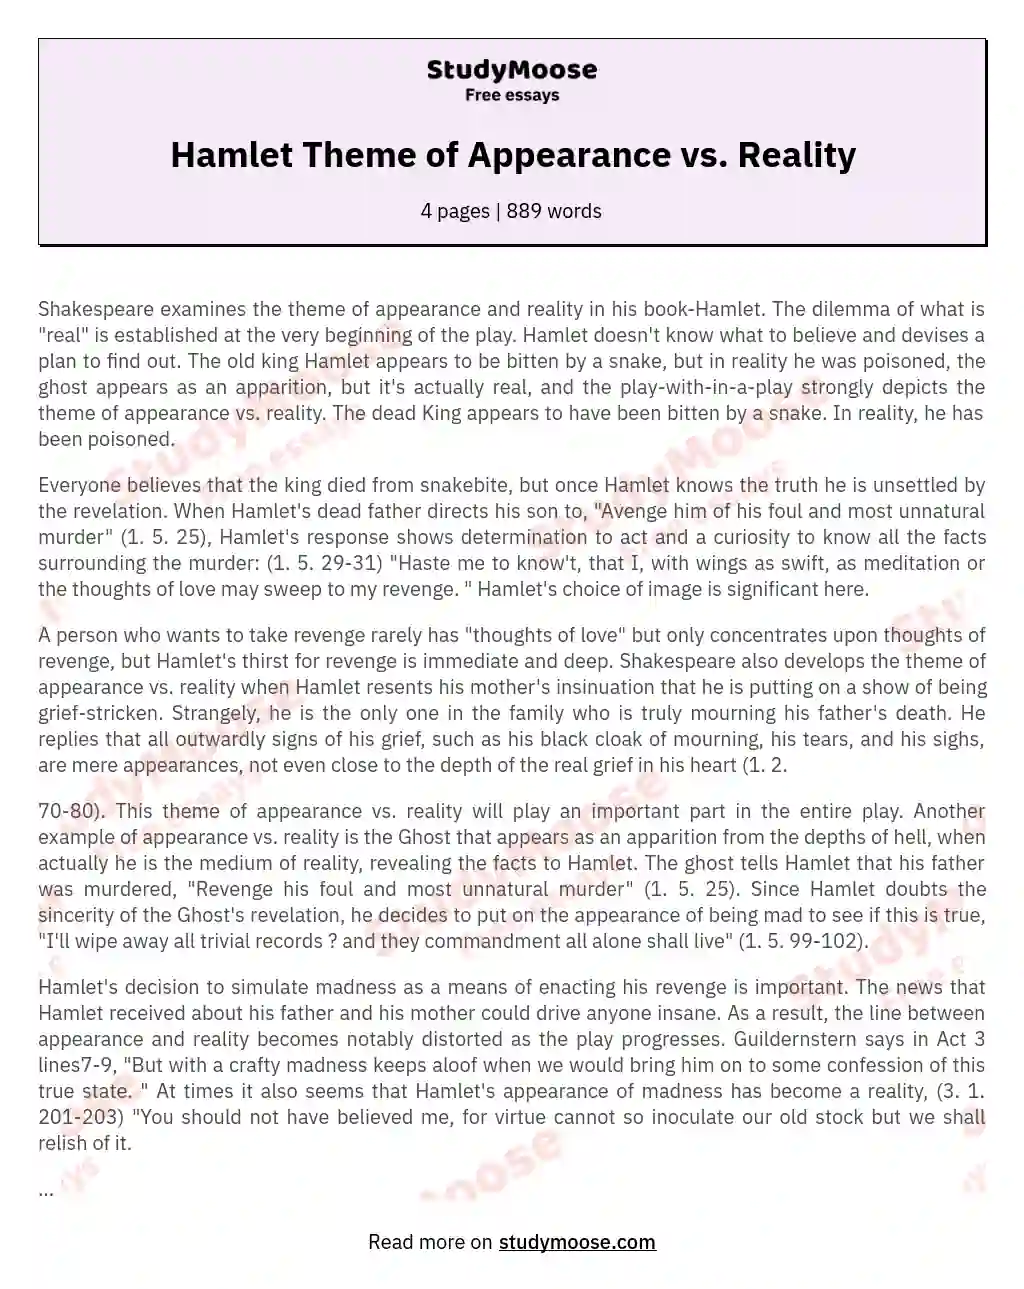 Hamlet Theme of Appearance vs. Reality essay